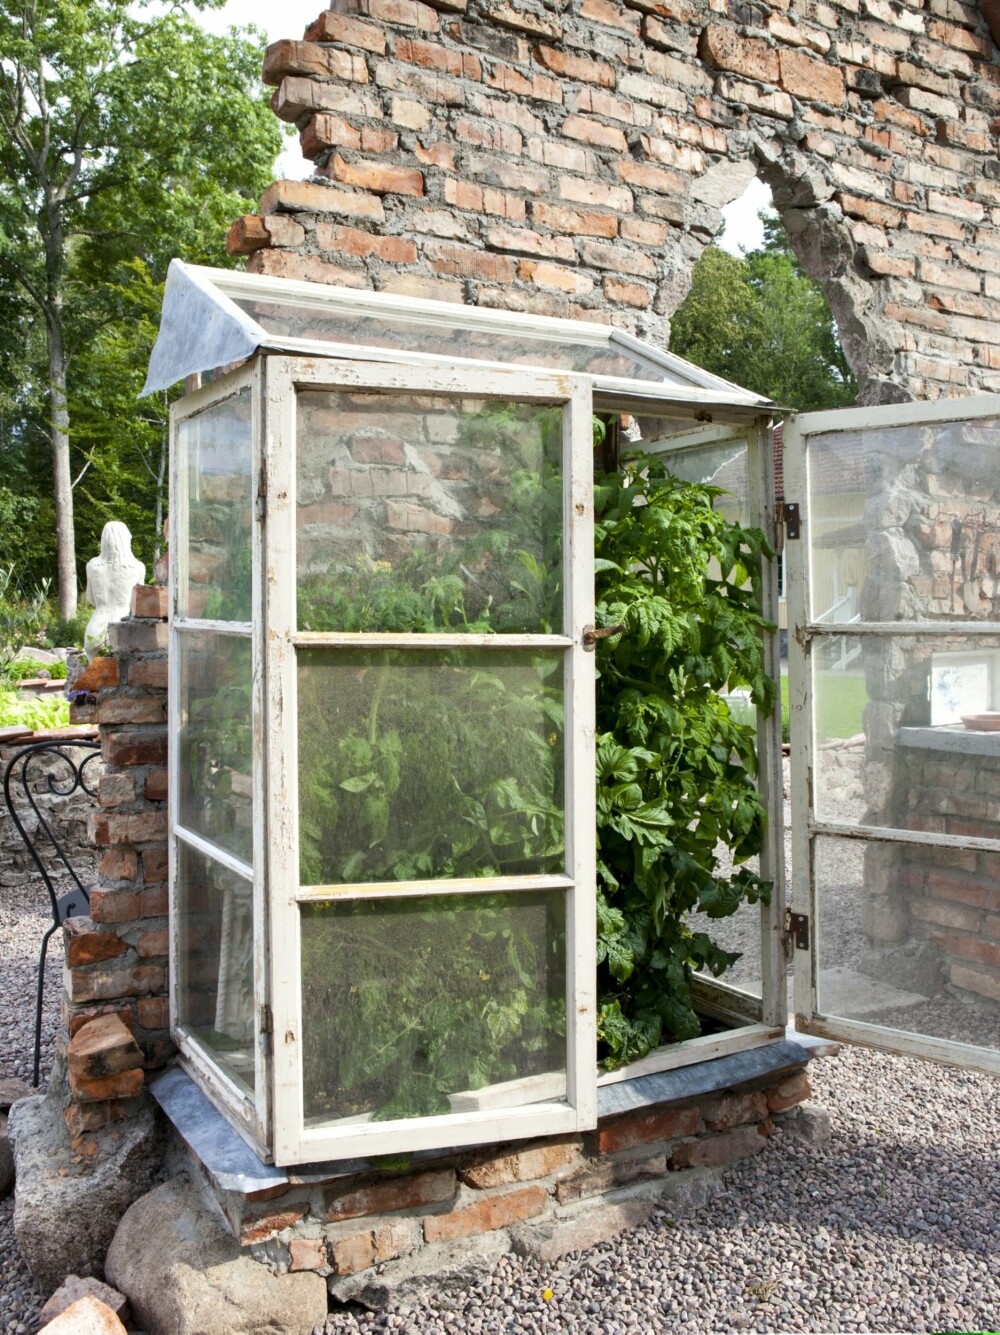 I LE: Mindre hardføre planter står i drivhuset, som er bygd av fem gamle vinduer og en sinkplate. Akkurat nå vokser tomater og chili her.